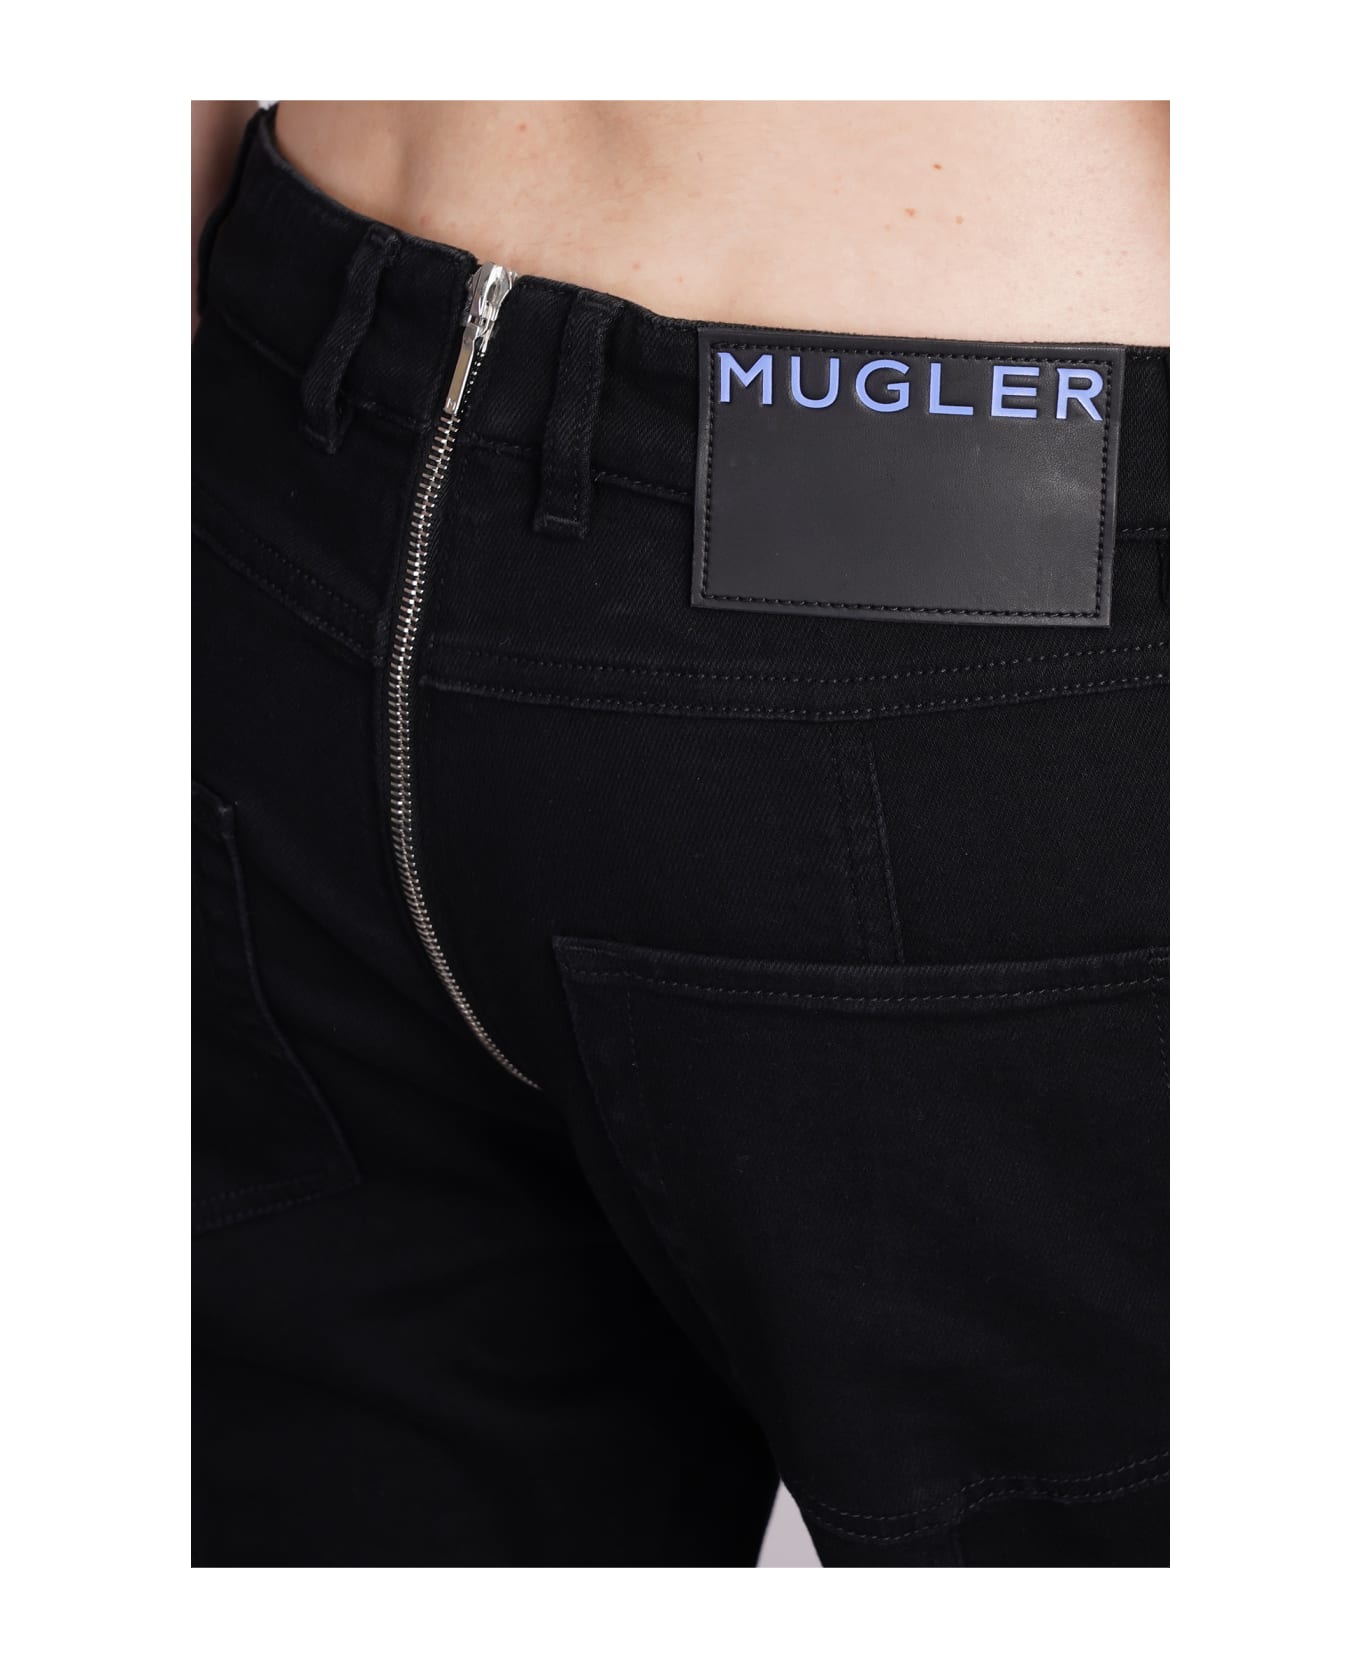 Mugler Jeans In Black Denim - black ボトムス